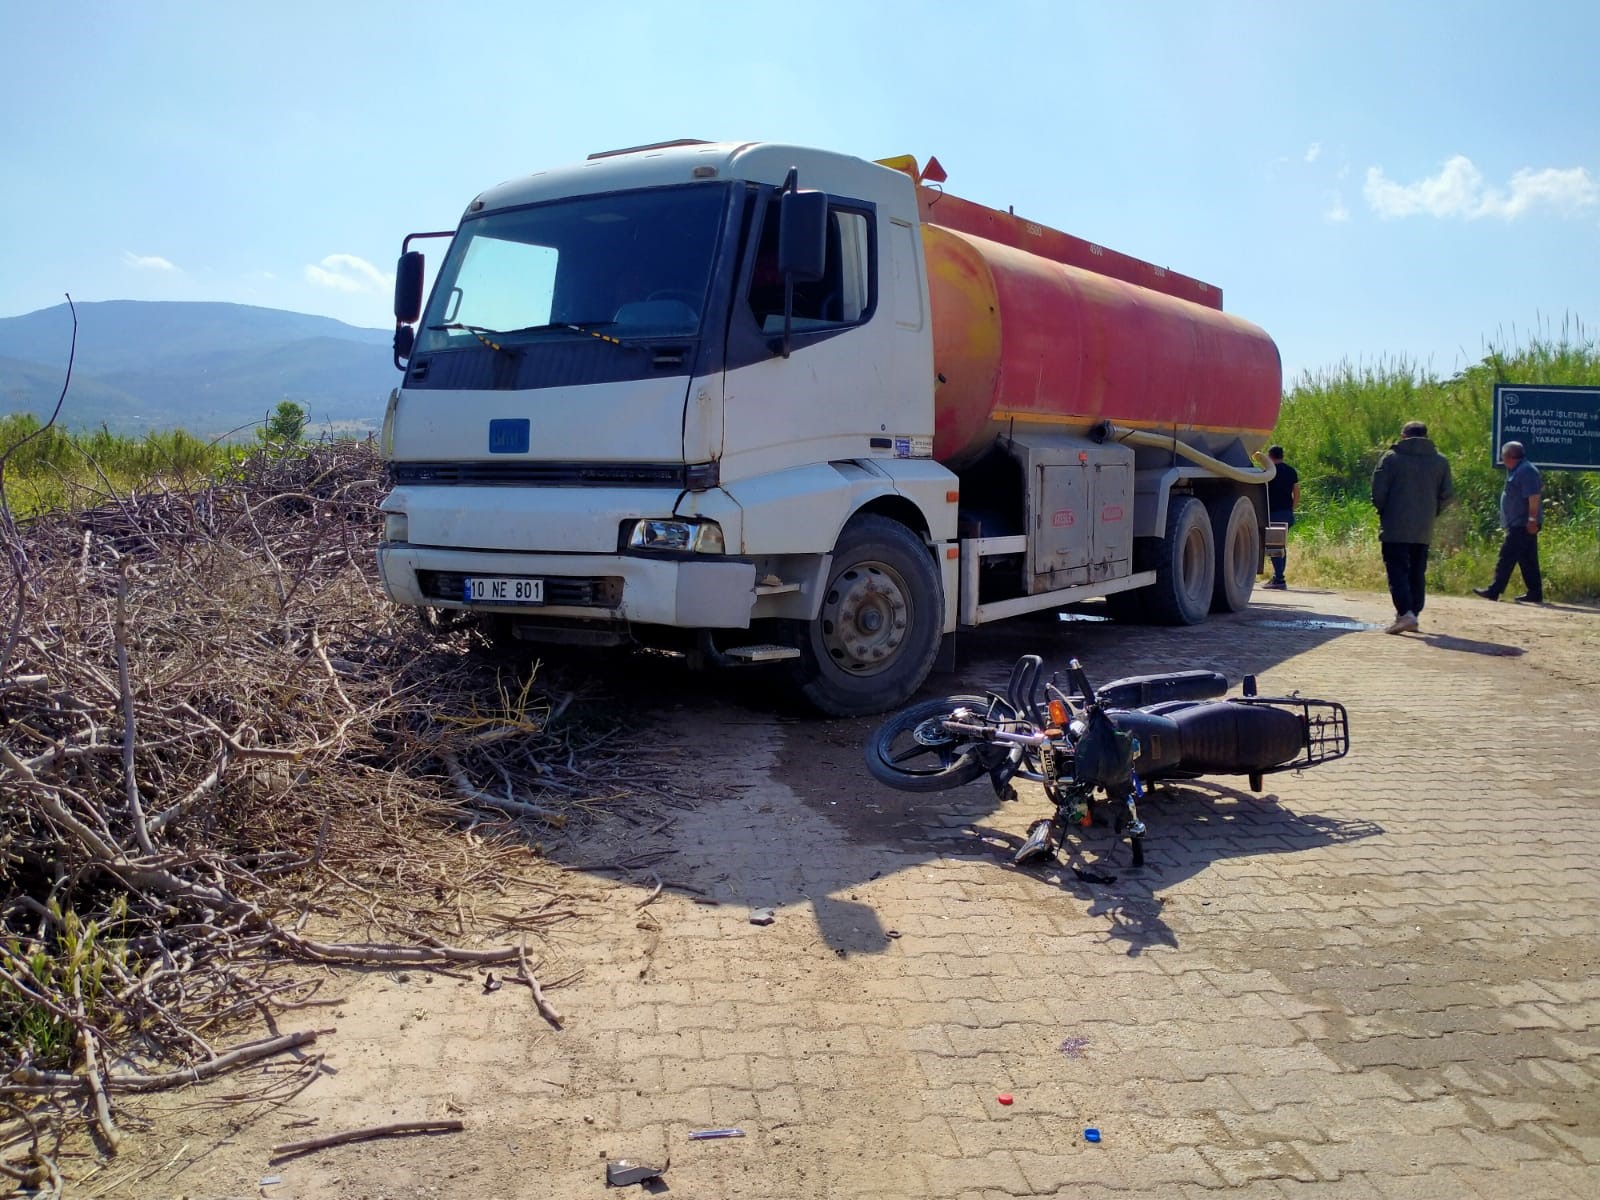 Aydın'da Su Tankeri Ile Motosiklet Çarpıştı2